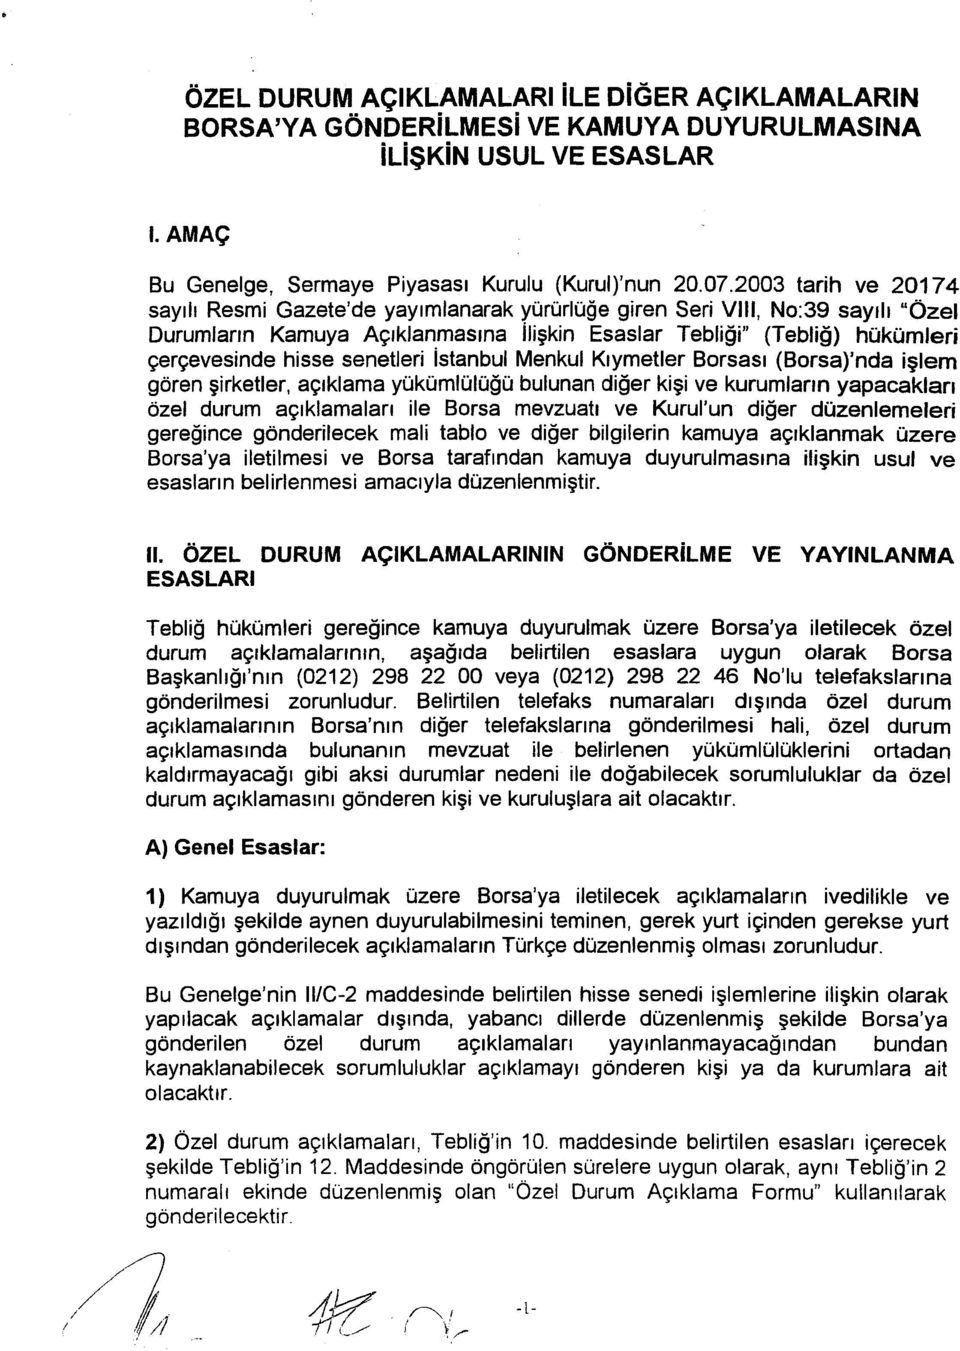 senetleri İstanbul Menkul Kıymetler Borsası (Borsa)'nda işlem gören şirketler, açıklama yükümlülüğü bulunan diğer kişi ve kurumların yapacakları özel durum açıklamaları ile Borsa mevzuatı ve Kurul'un